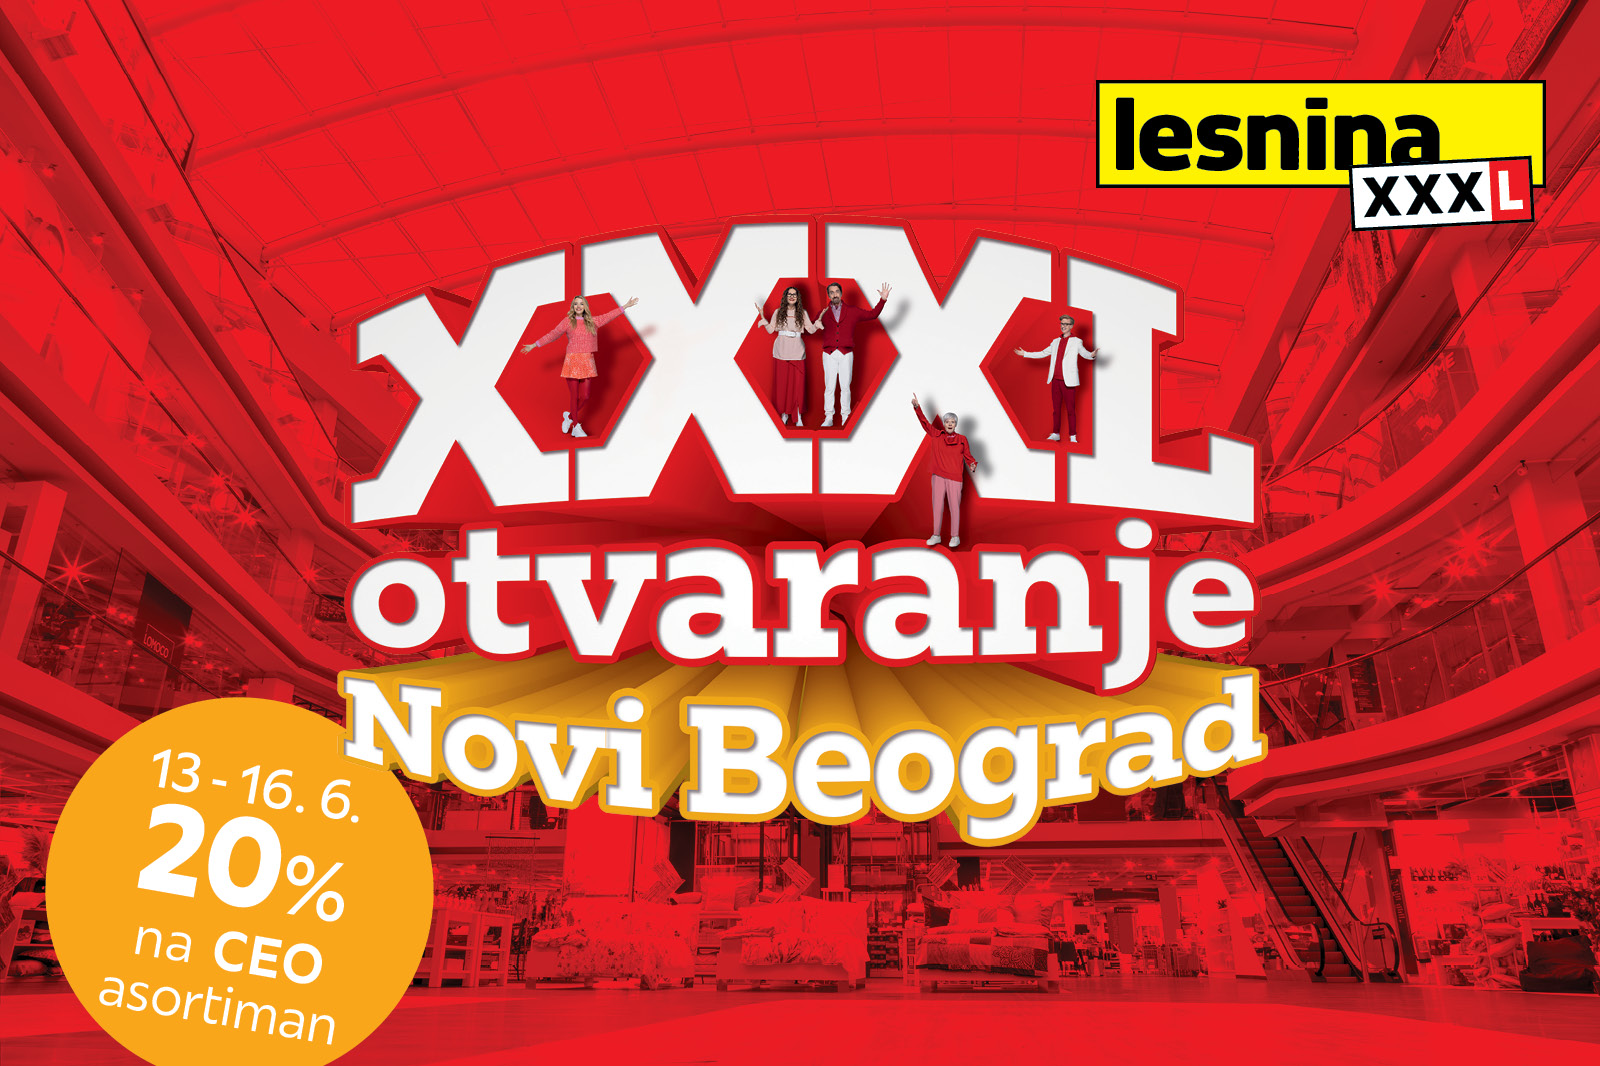 Porodica Lesninovic otvaranje Lesnina XXXL otvara vrata i u Beogradu: Transformišite svoj dom